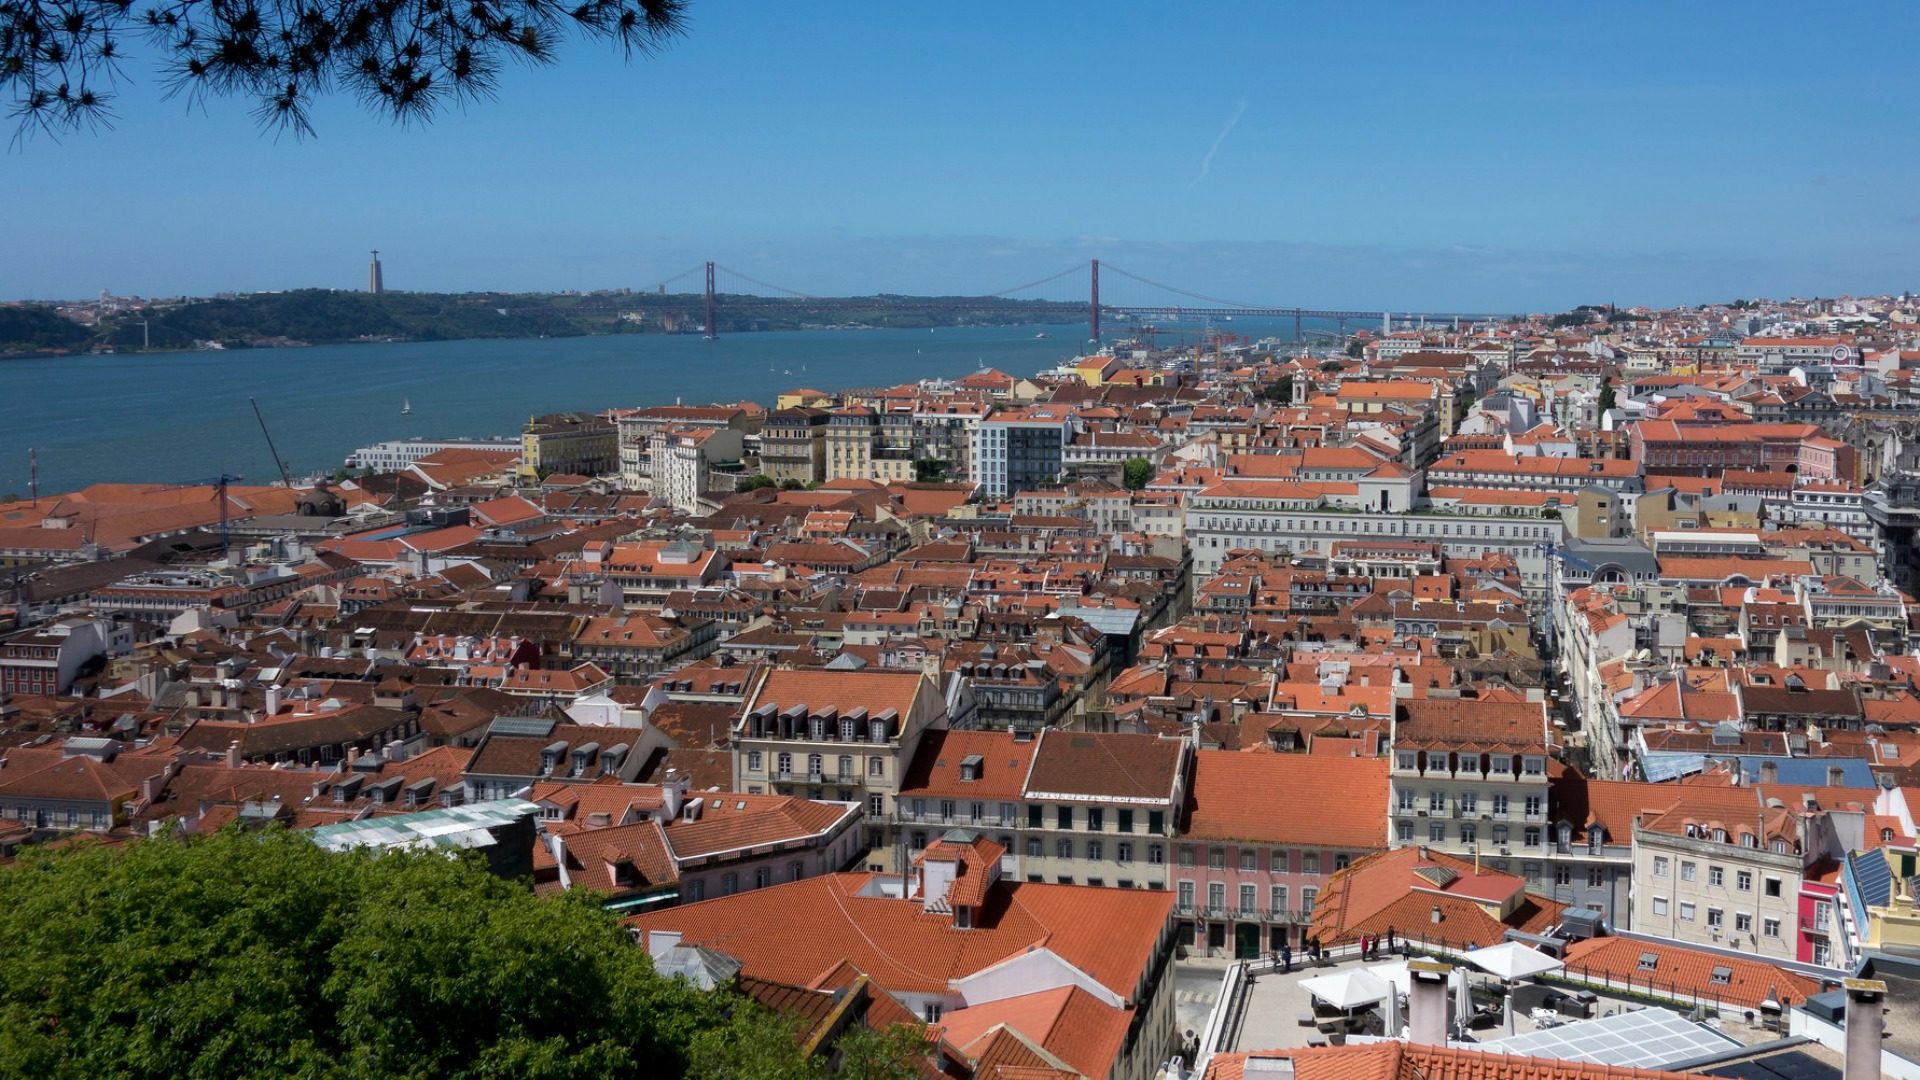 Lisbonne, capitale du Portugal, l'un des pays les plus catholiques d'Europe. (Photo: Flickr/tetedelart1855/CC BY 2.0)